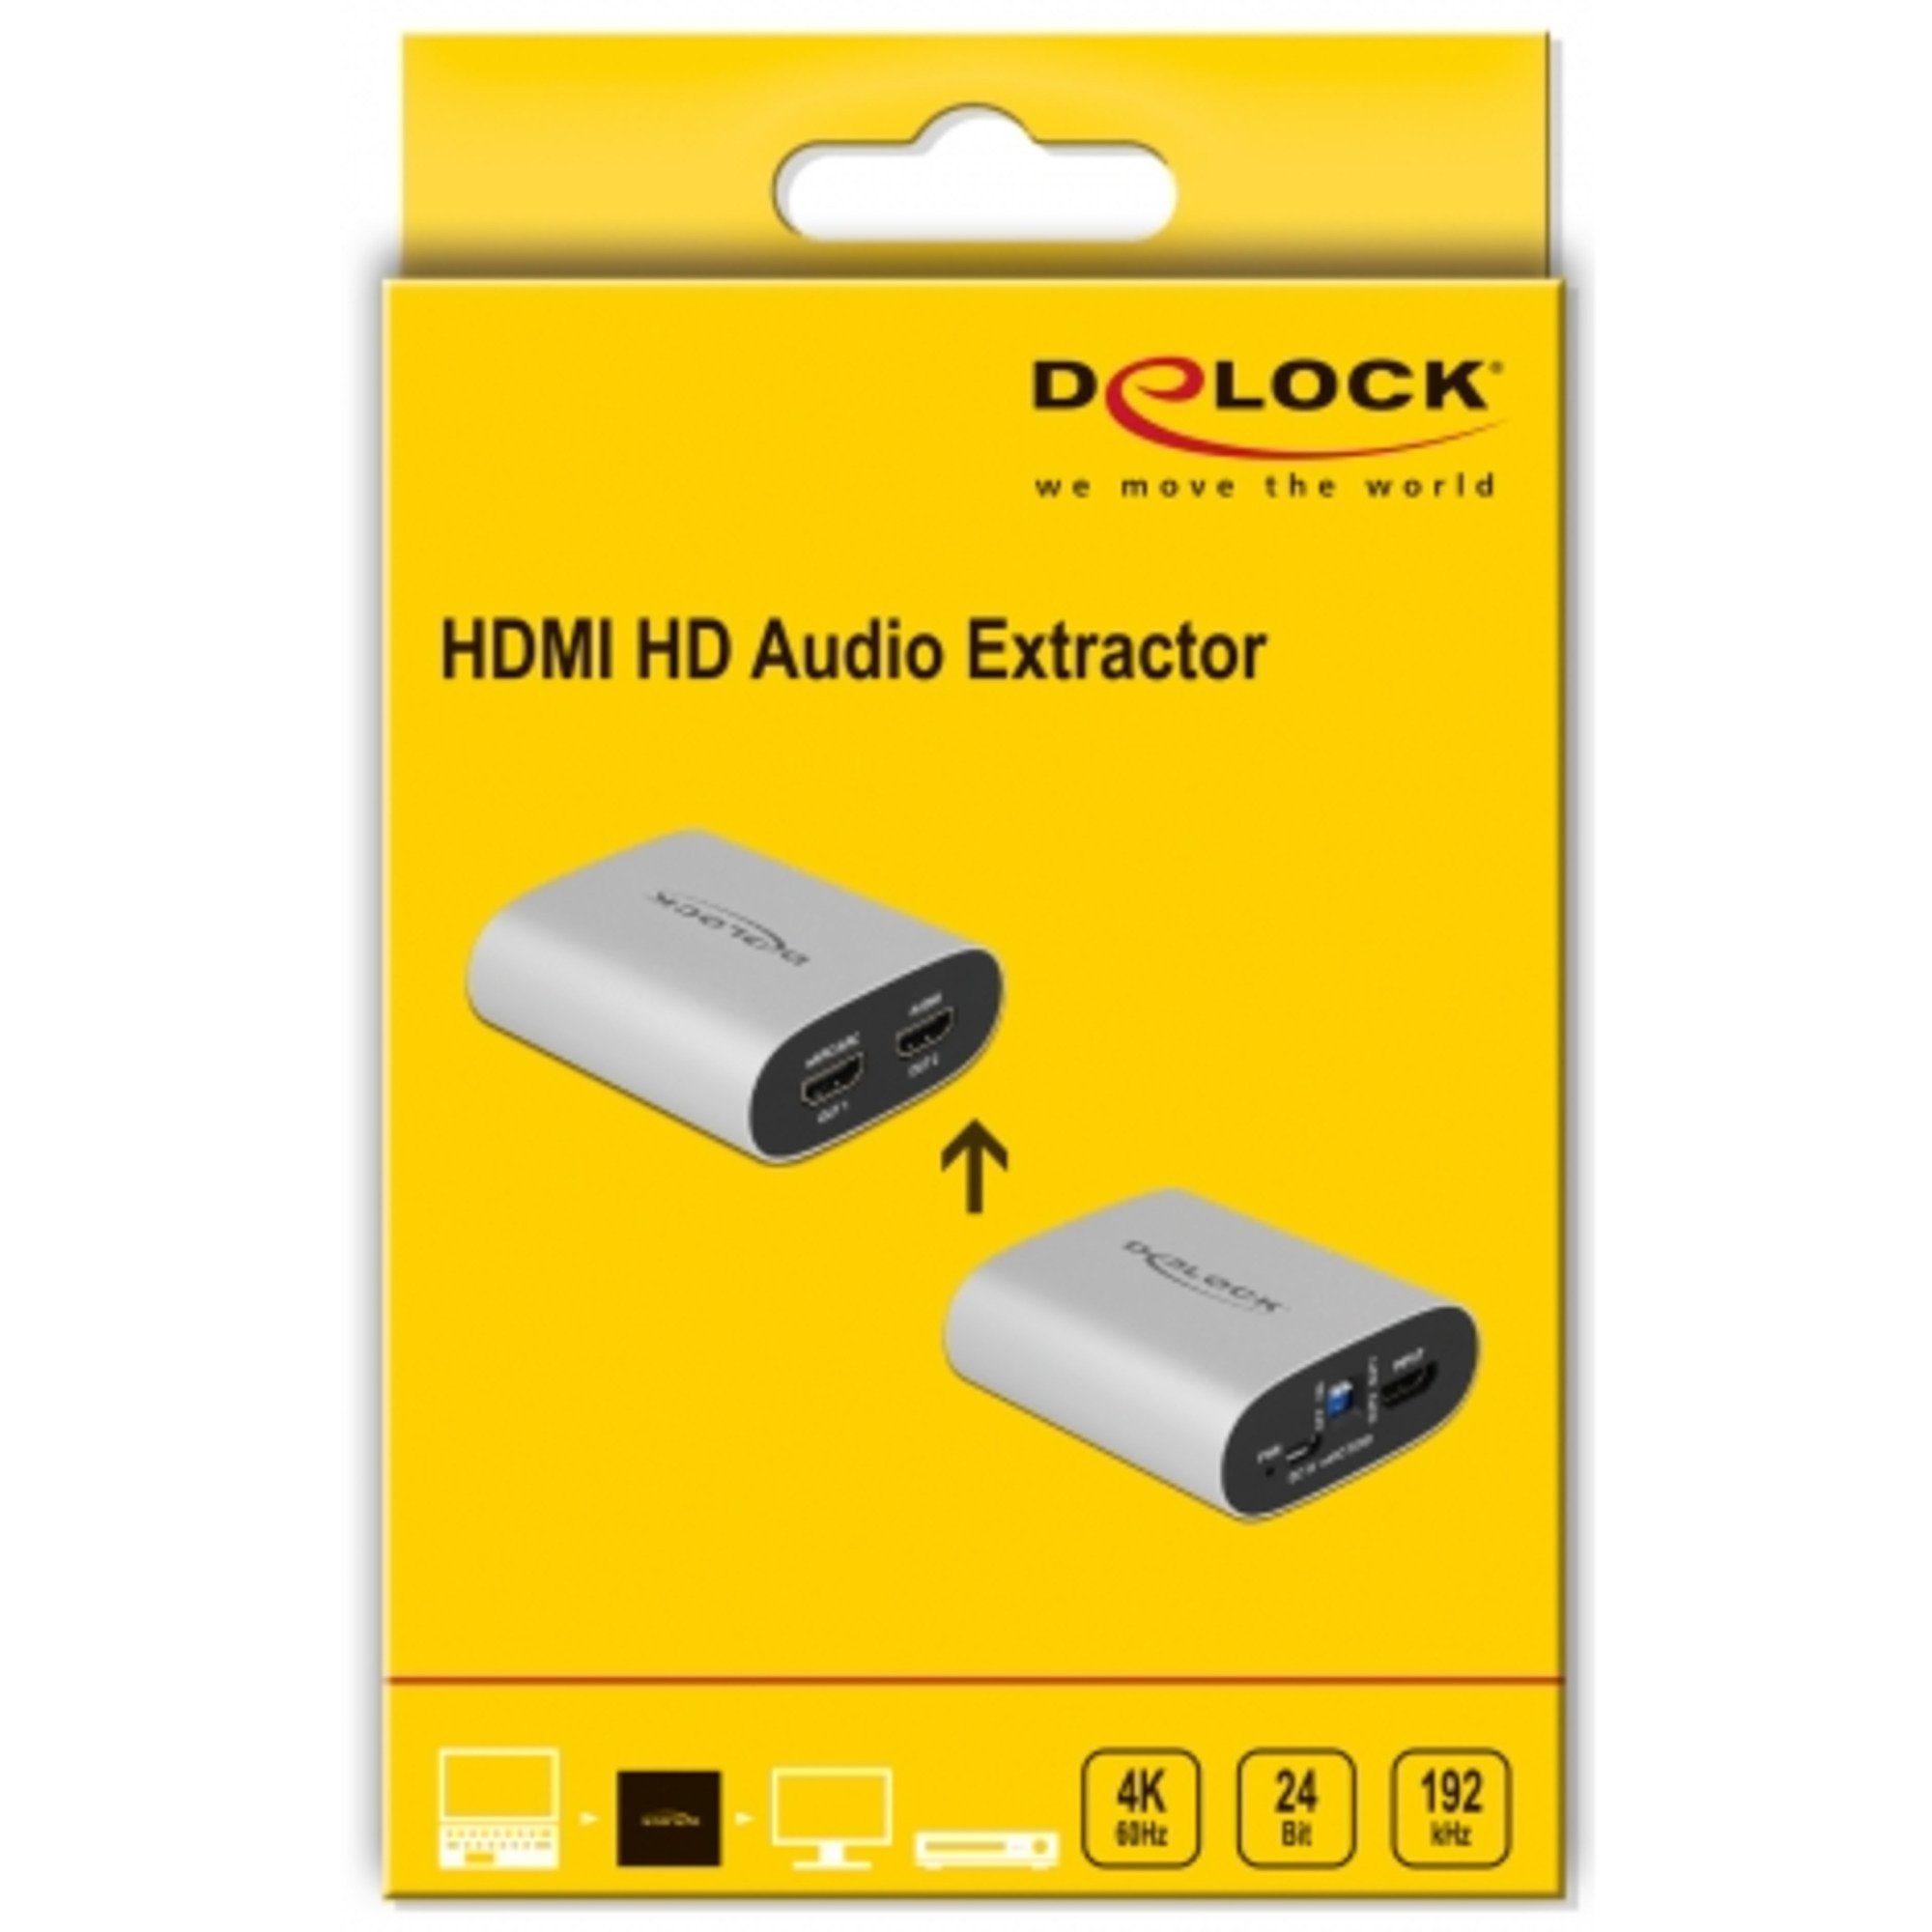 HD Audio- DeLOCK Video-Adapter Audio HDMI HDMI Extractor 60 Hz zu 4K & Delock